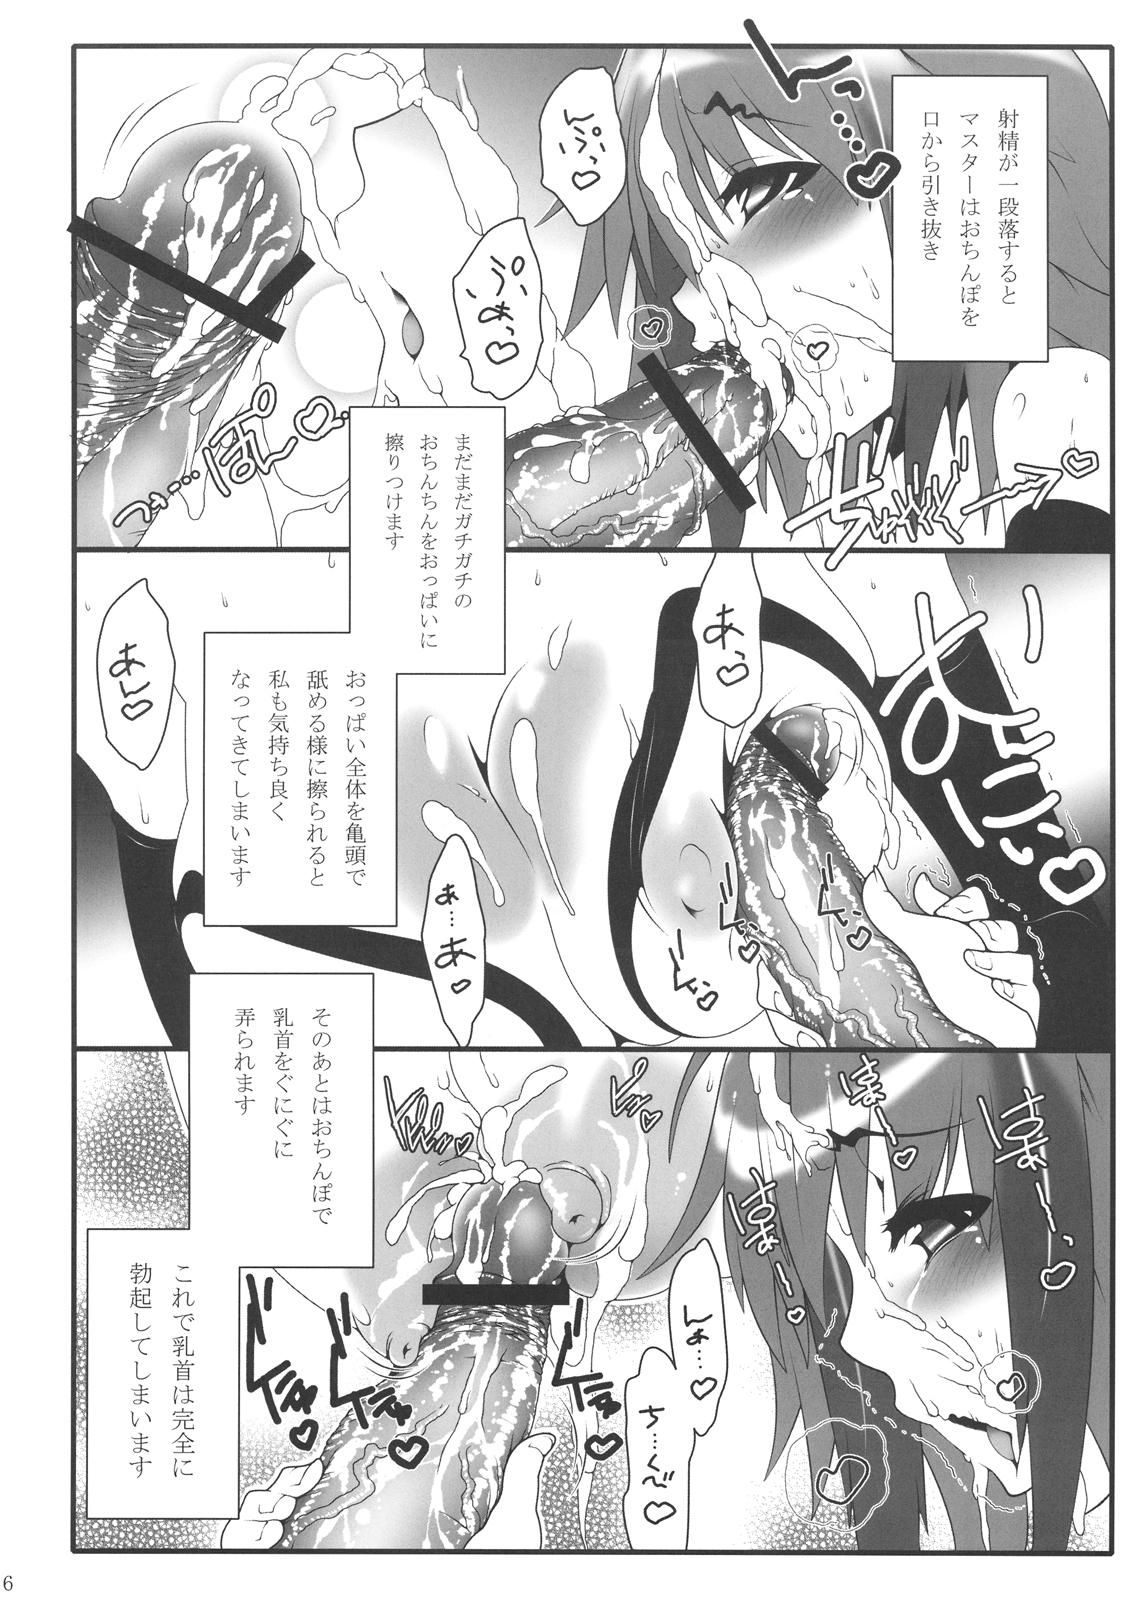 Secret Ikaros-san to. - Sora no otoshimono Officesex - Page 6